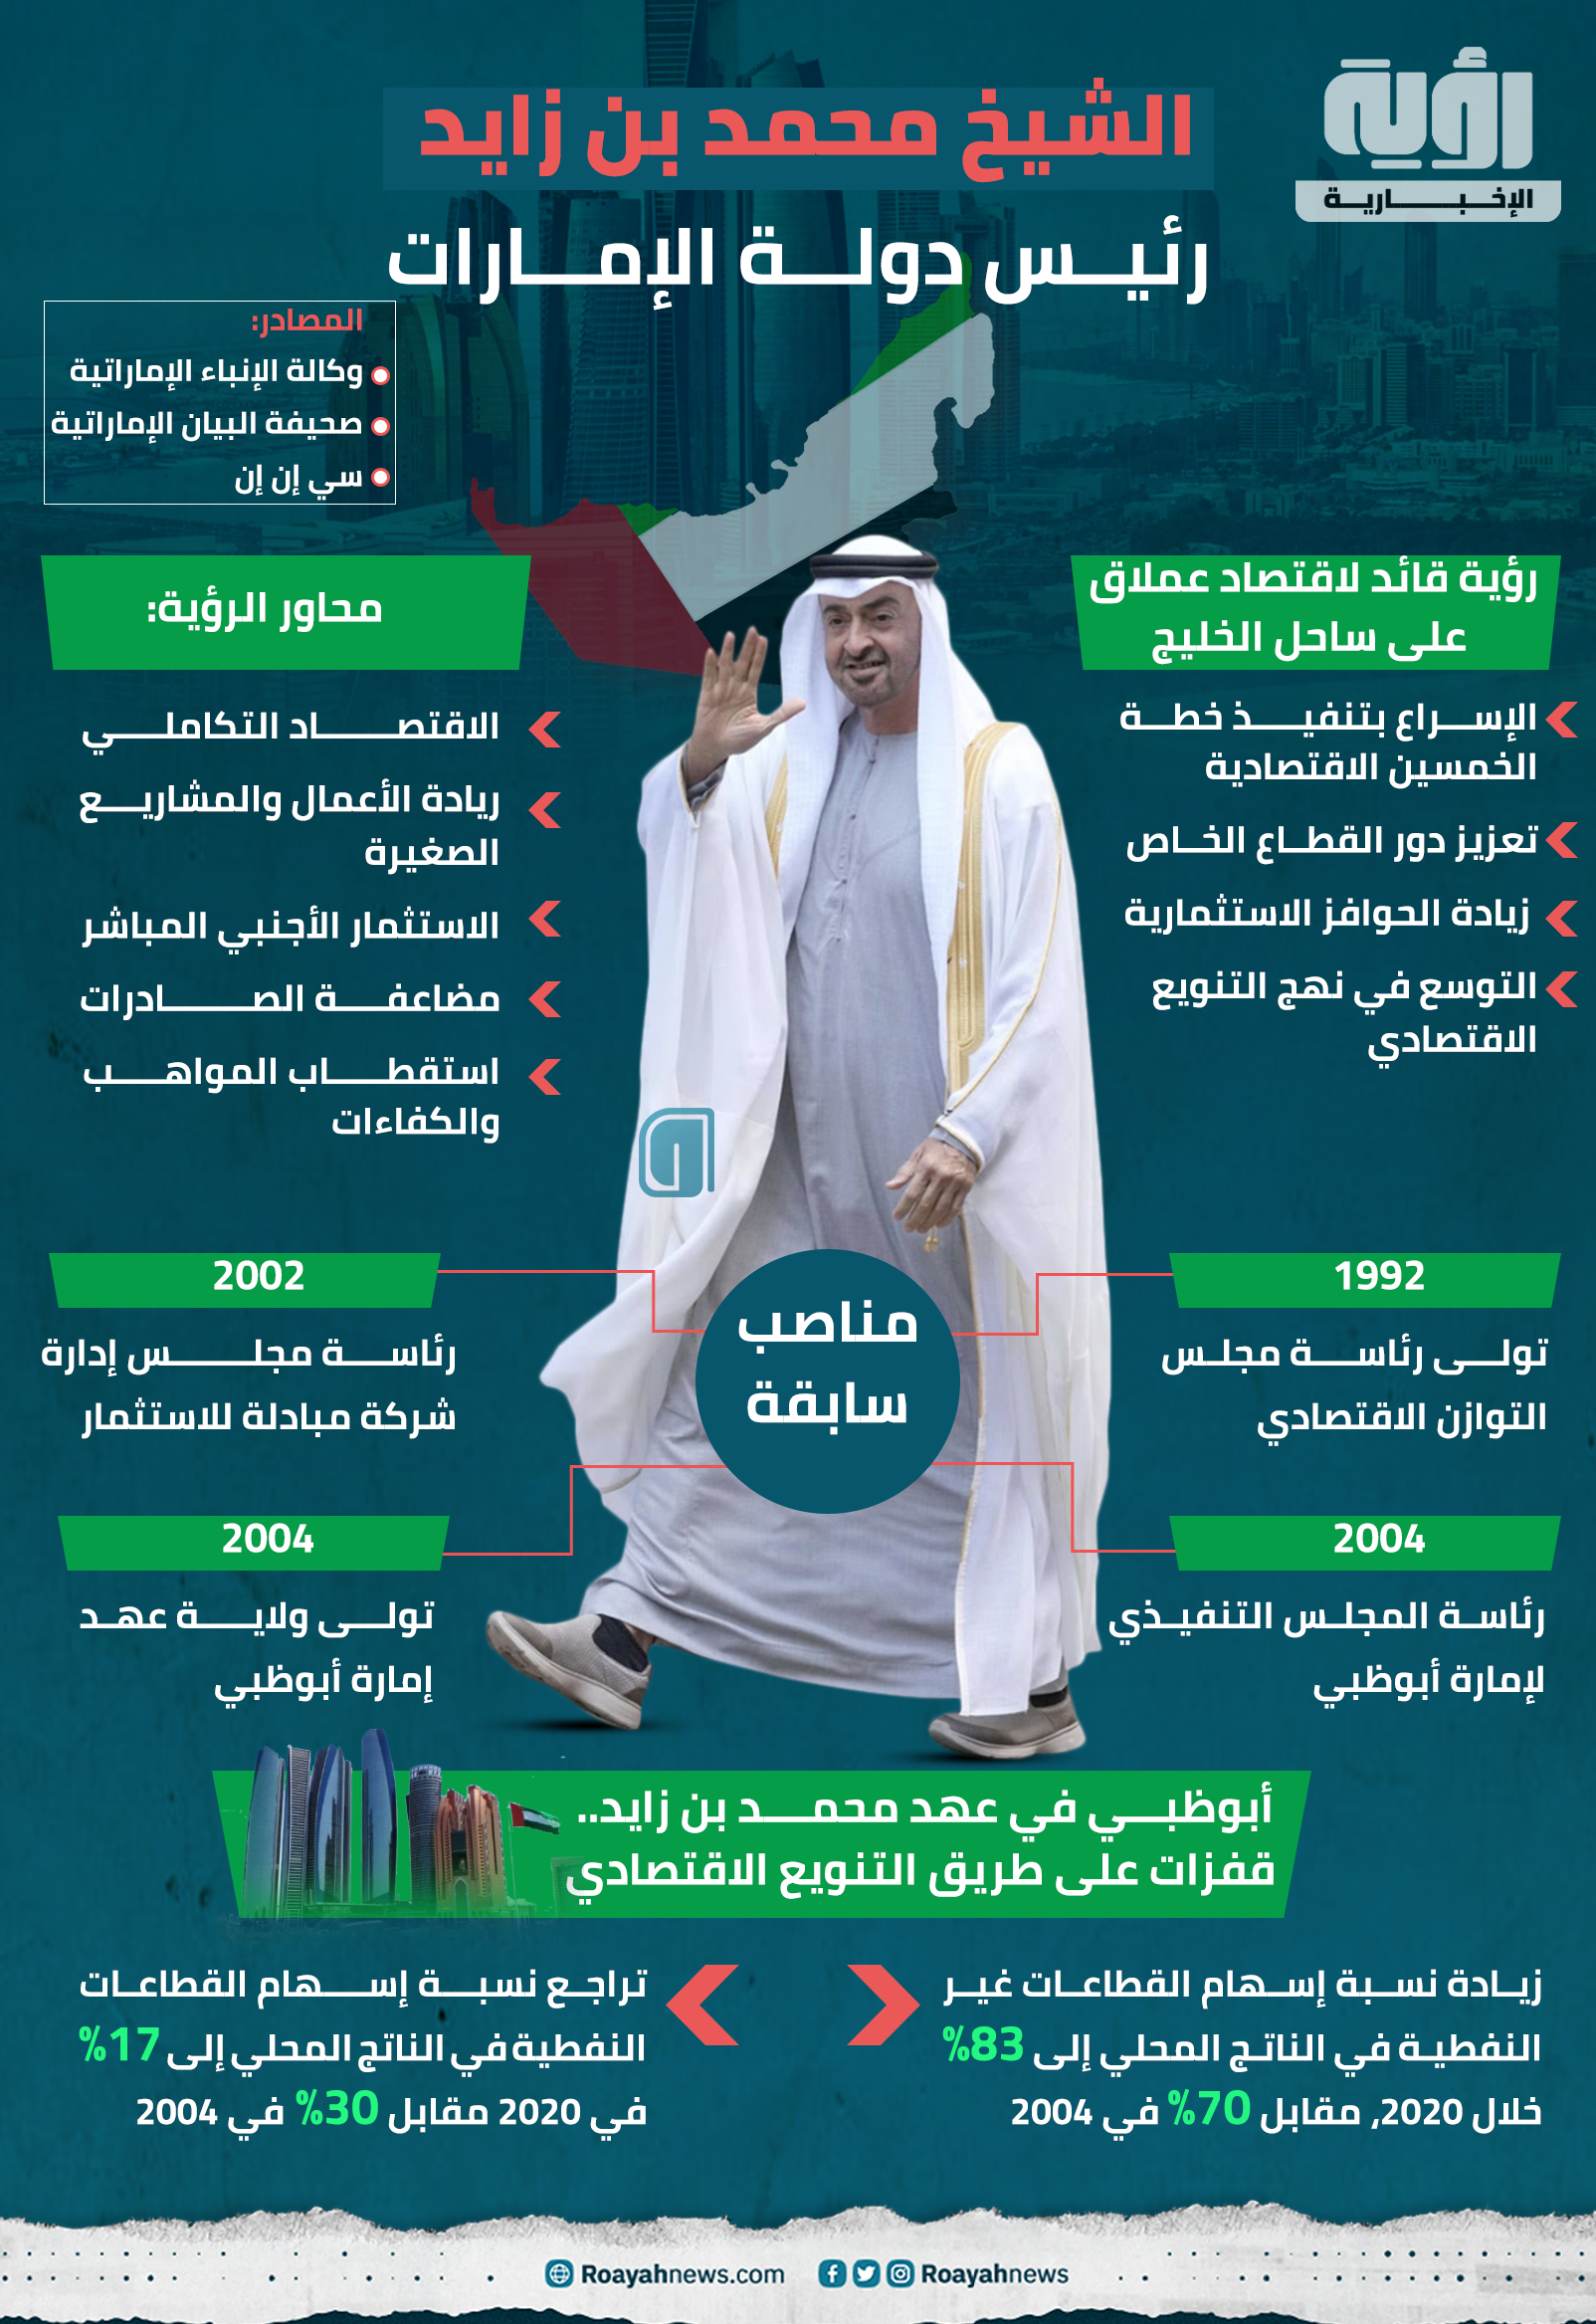 الشيخ محمد بن زايد رئيس دولة الإمارات